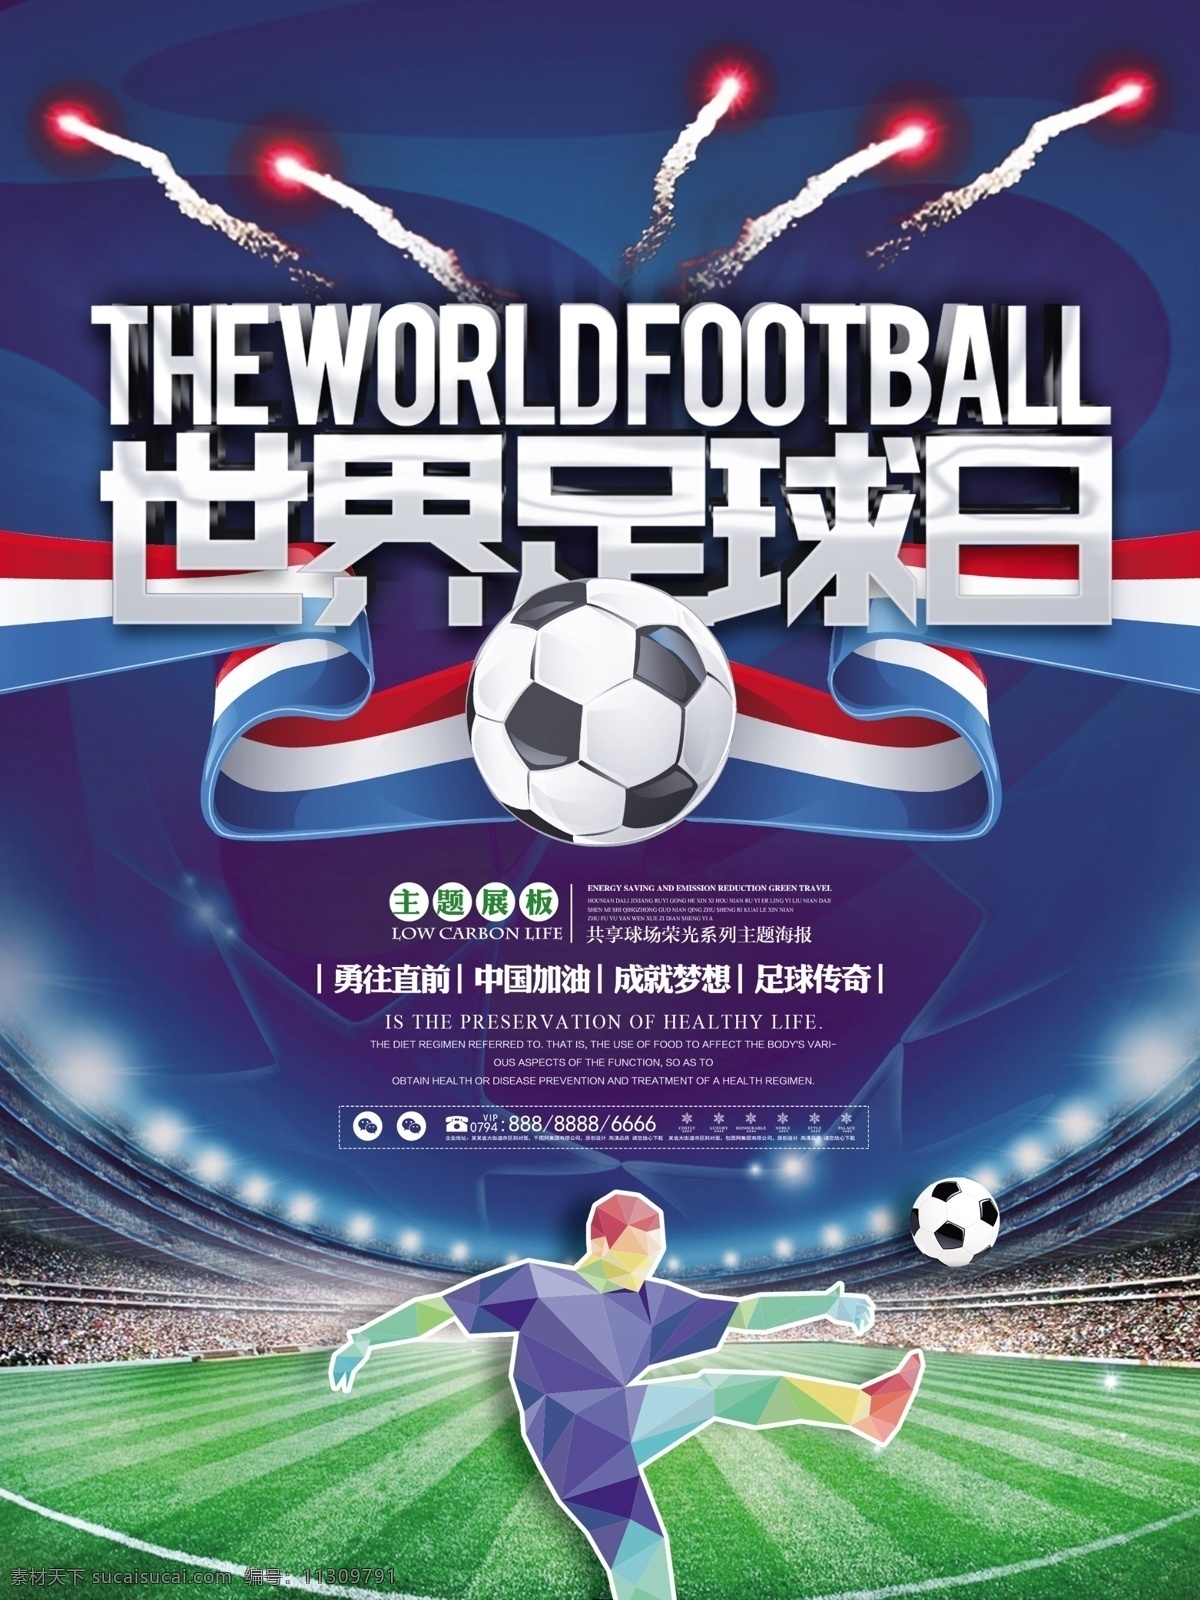 高端 时尚 酷 炫 世界 足球 日 竞技 比赛 宣传海报 酷炫 球场 足球日 宣传 海报 展板